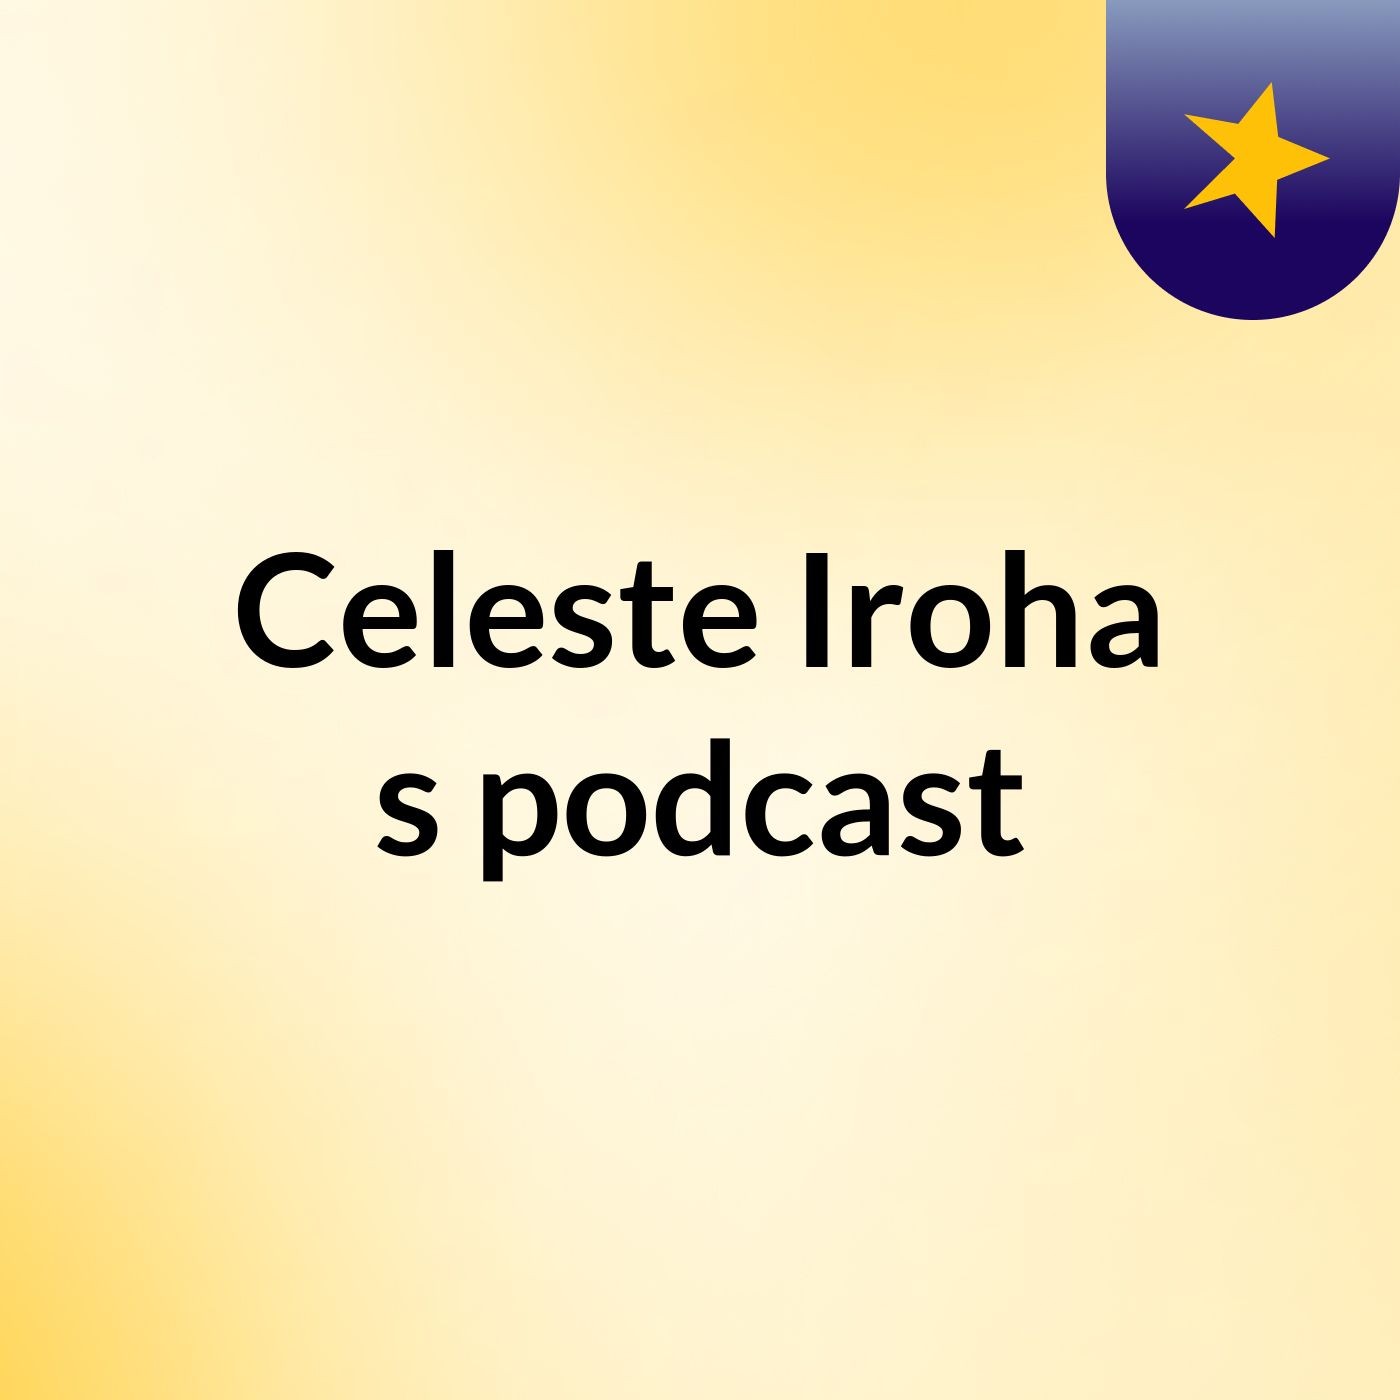 Celeste Iroha's podcast